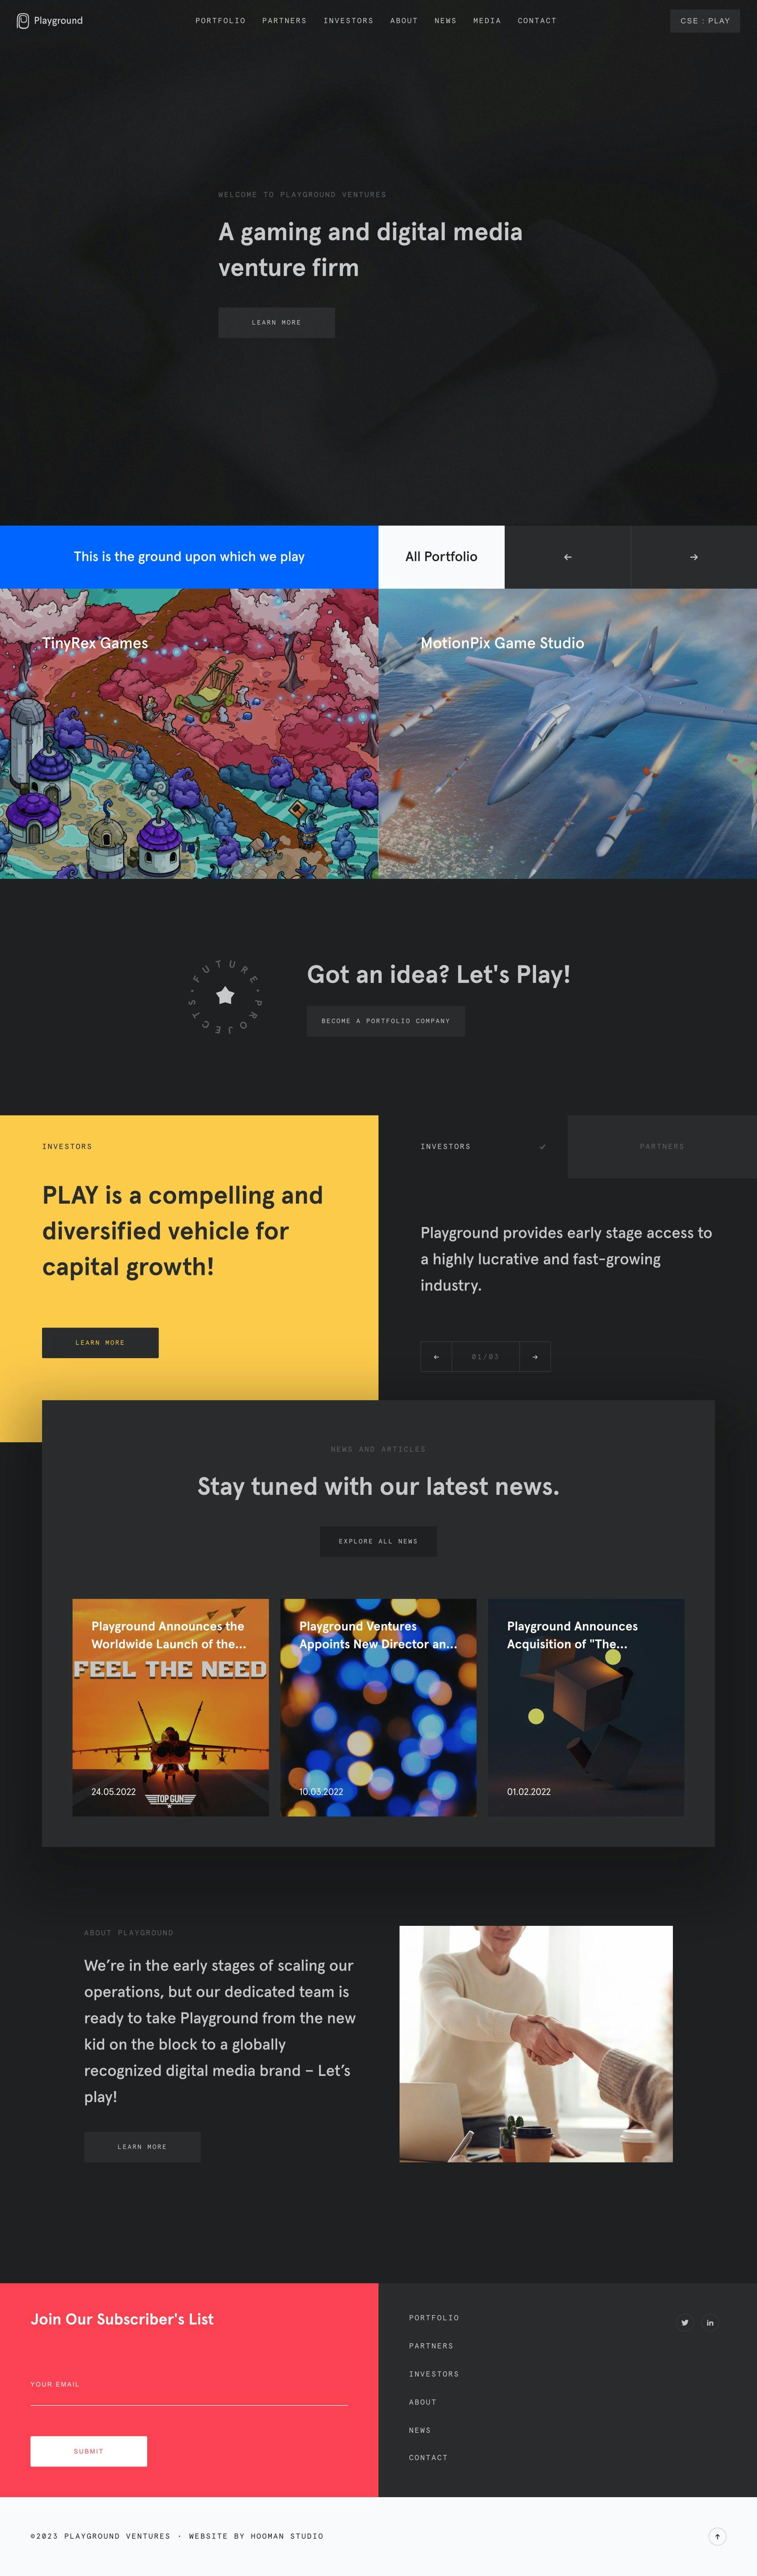 Playground ventures homepage website design